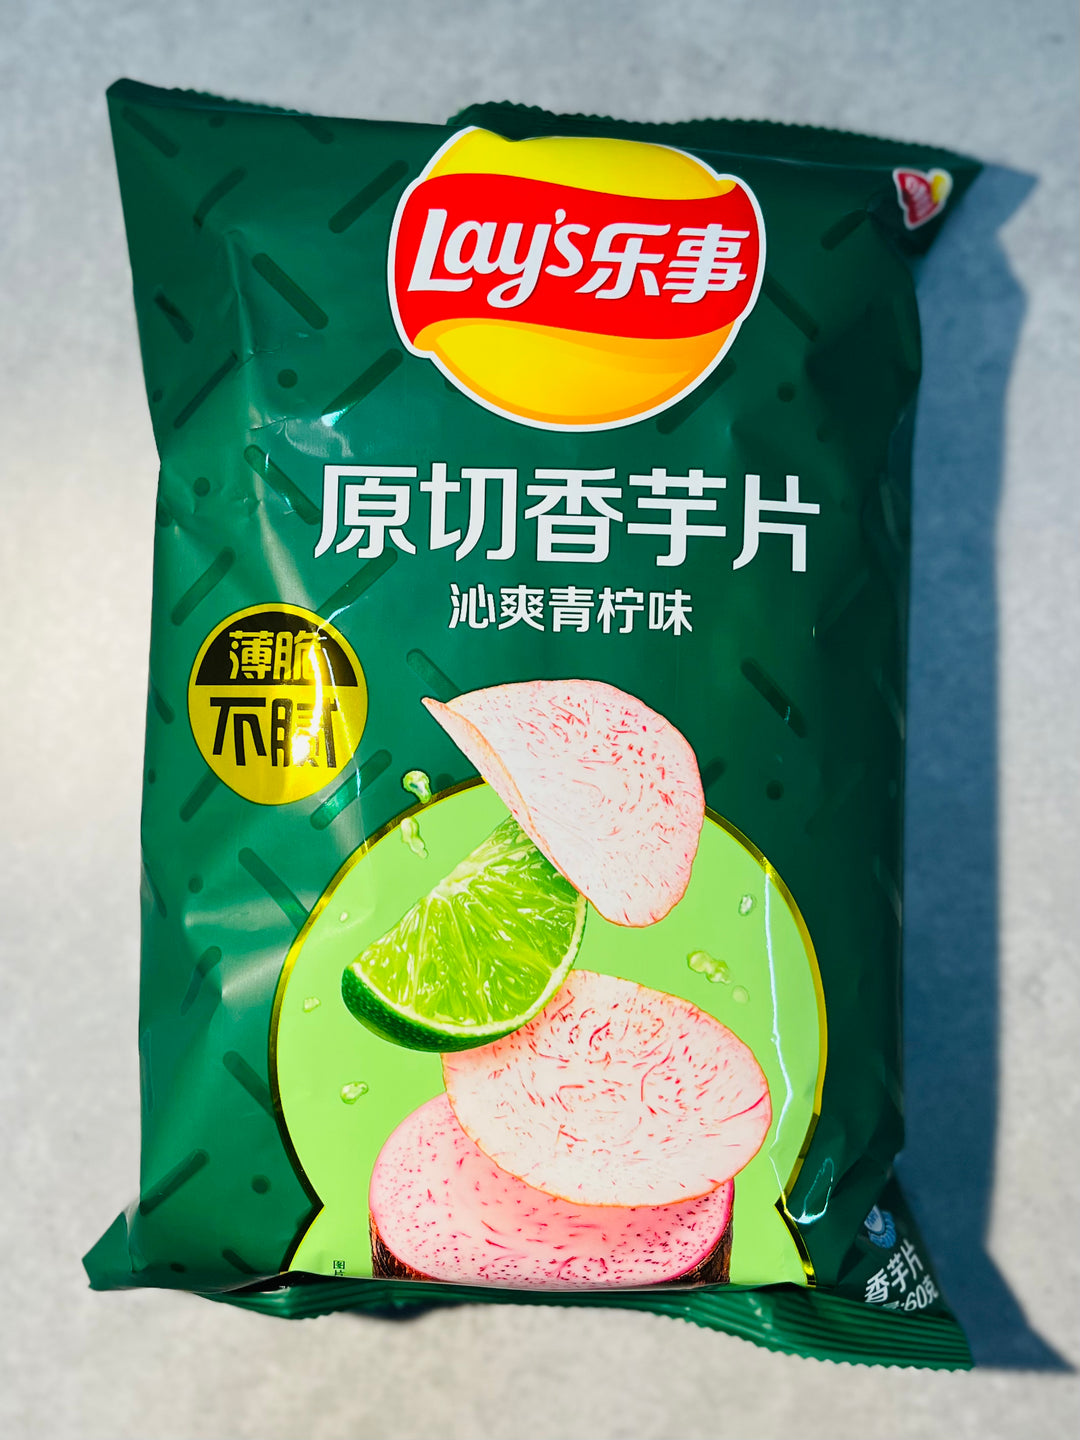 乐事原切香芋片青柠味60g Lay's Taro Chips Lime